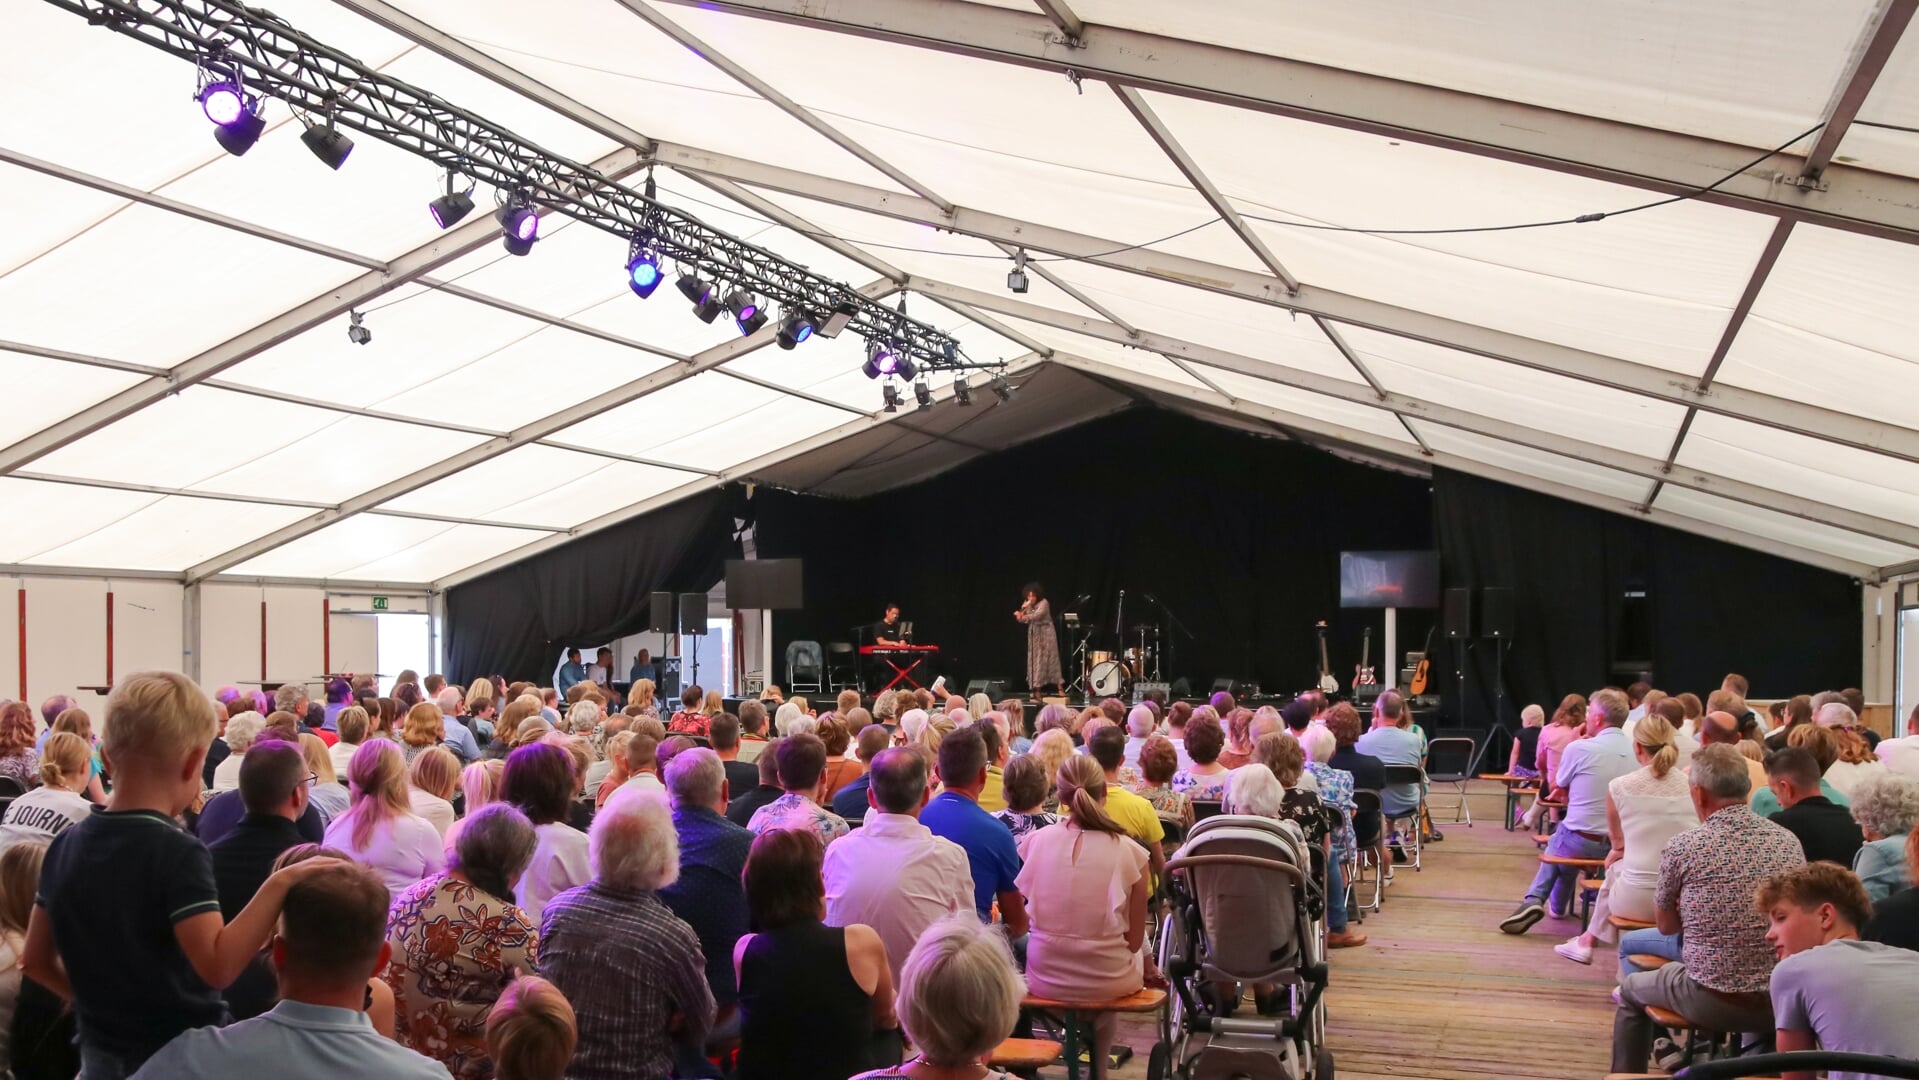 Ruim 300 bezoekers bezochten de tentdienst in Herwijnen in 2022.